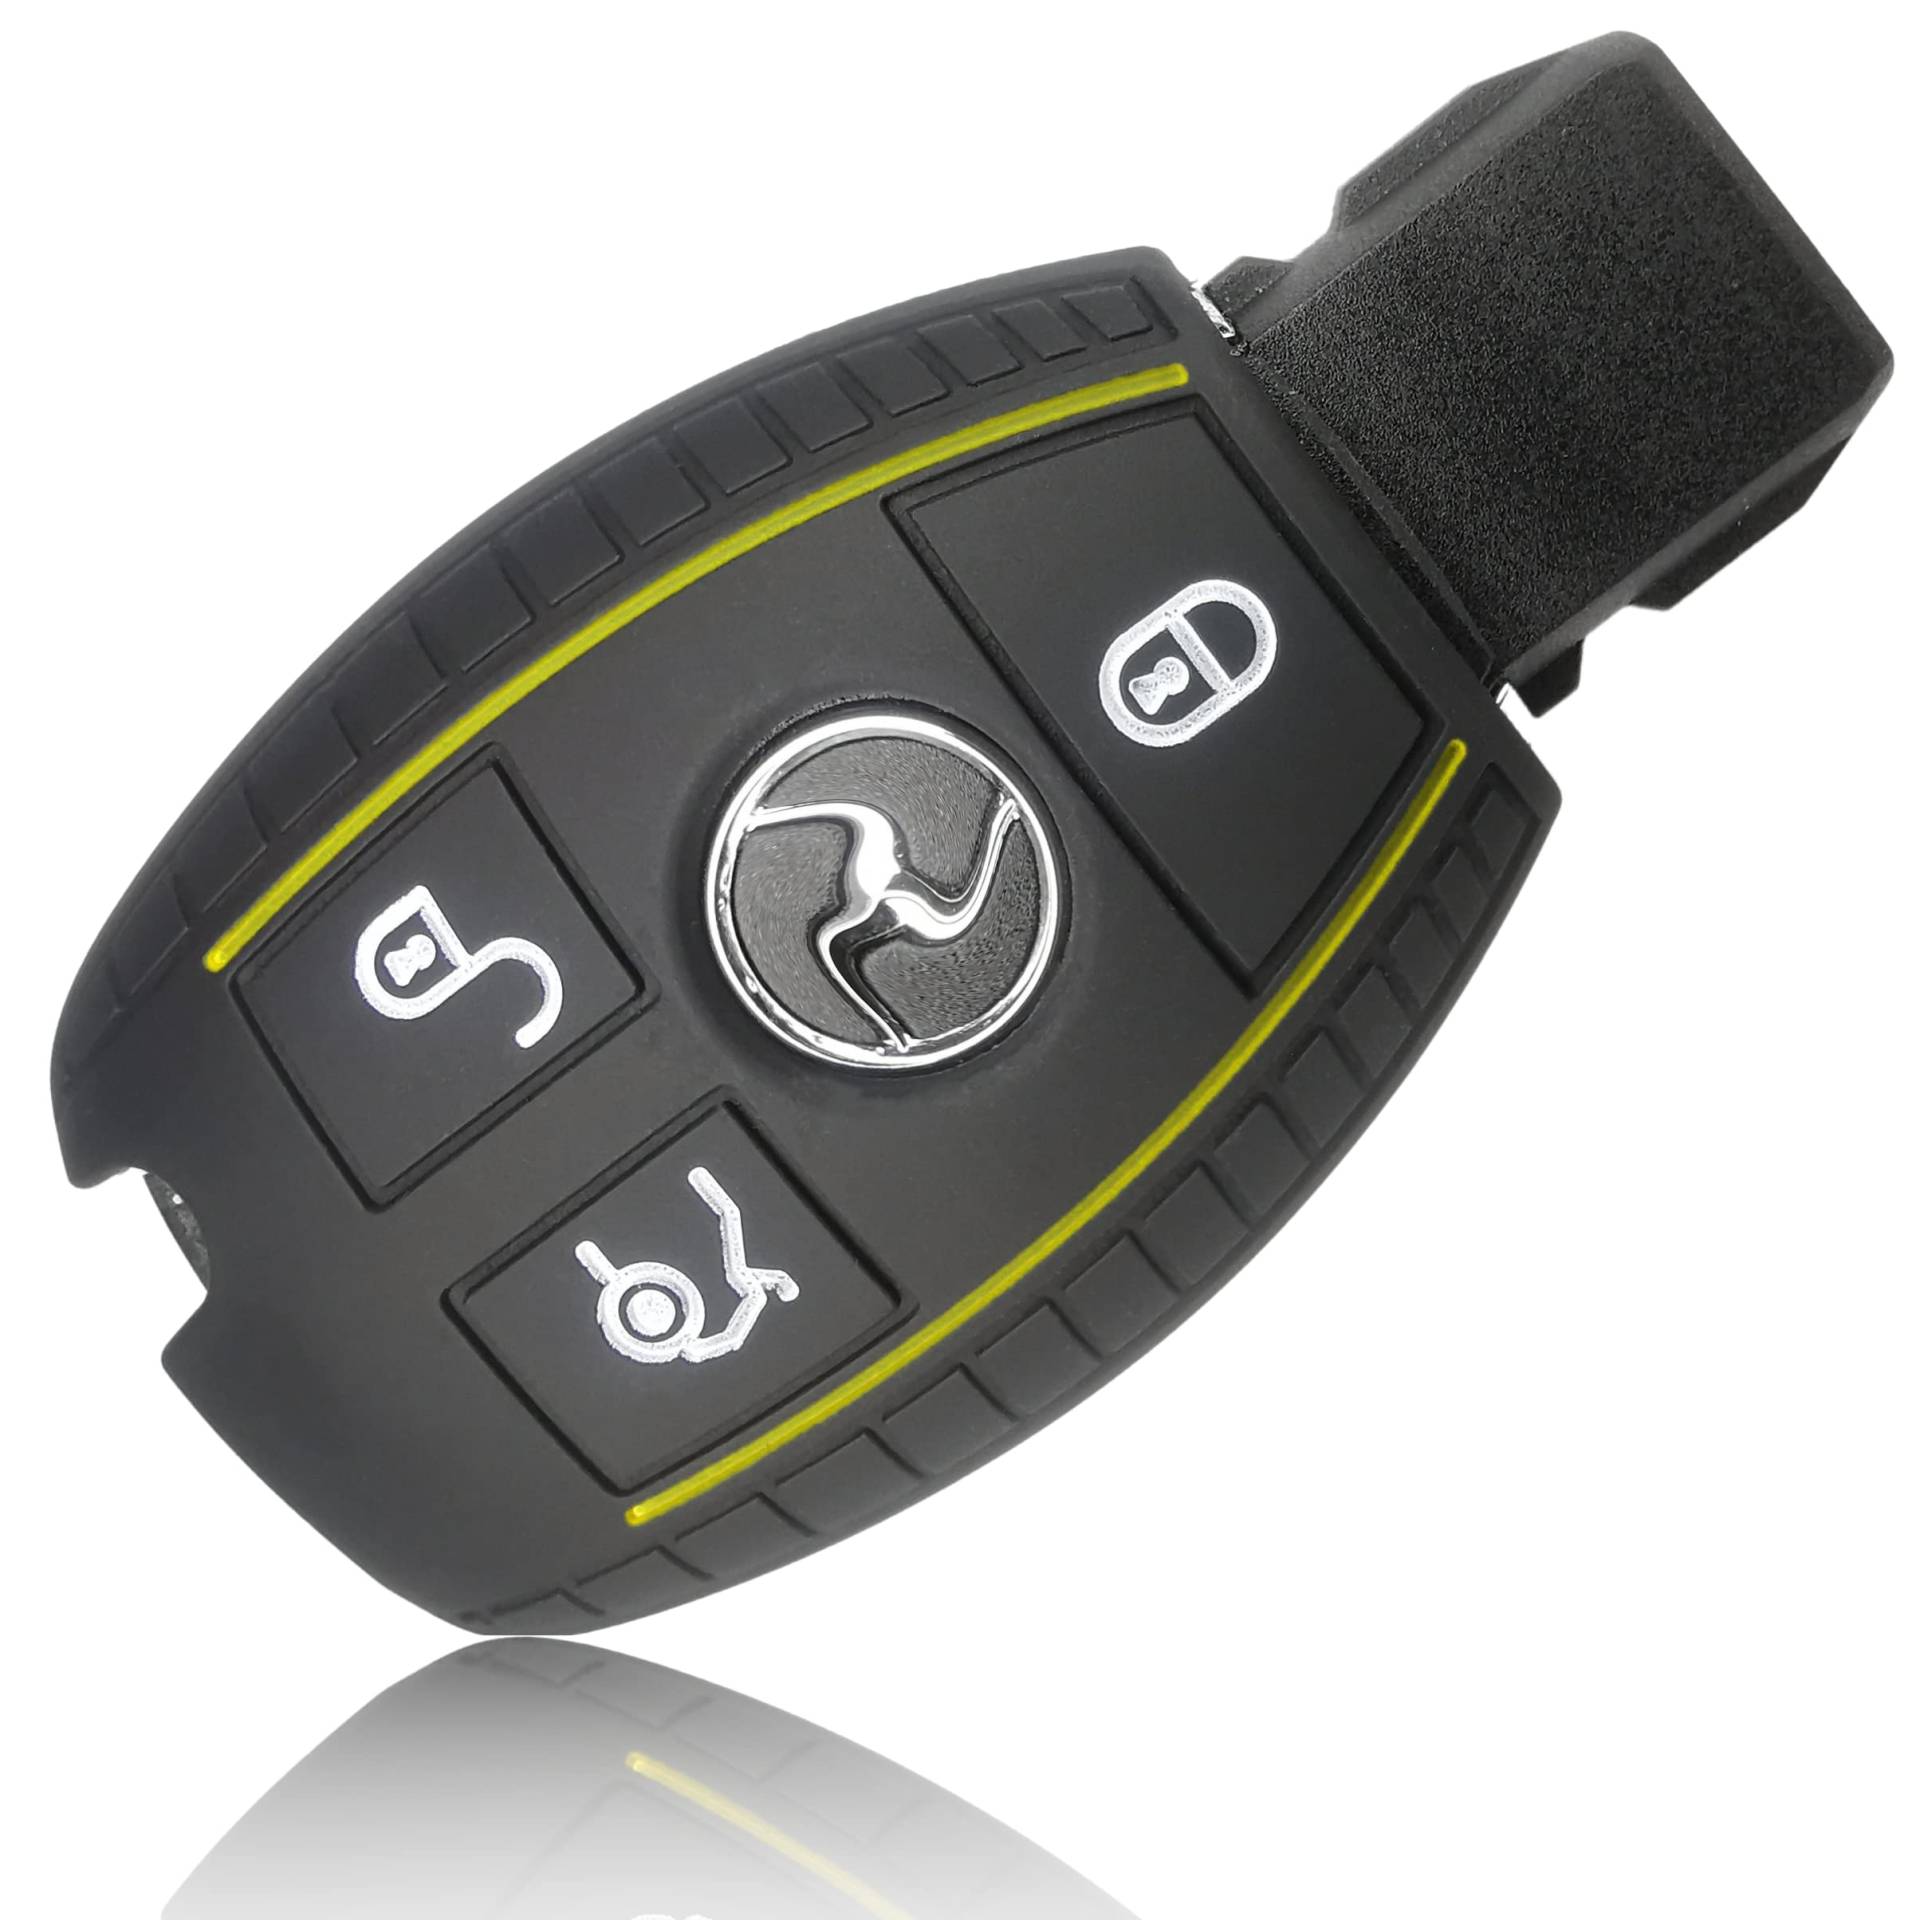 FOAMO Autoschlüssel Hülle kompatibel mit Mercedes Benz 3-Tasten - Silikon Schutzhülle Cover Schlüssel-Hülle in Schwarz-Gelb von FOAMO